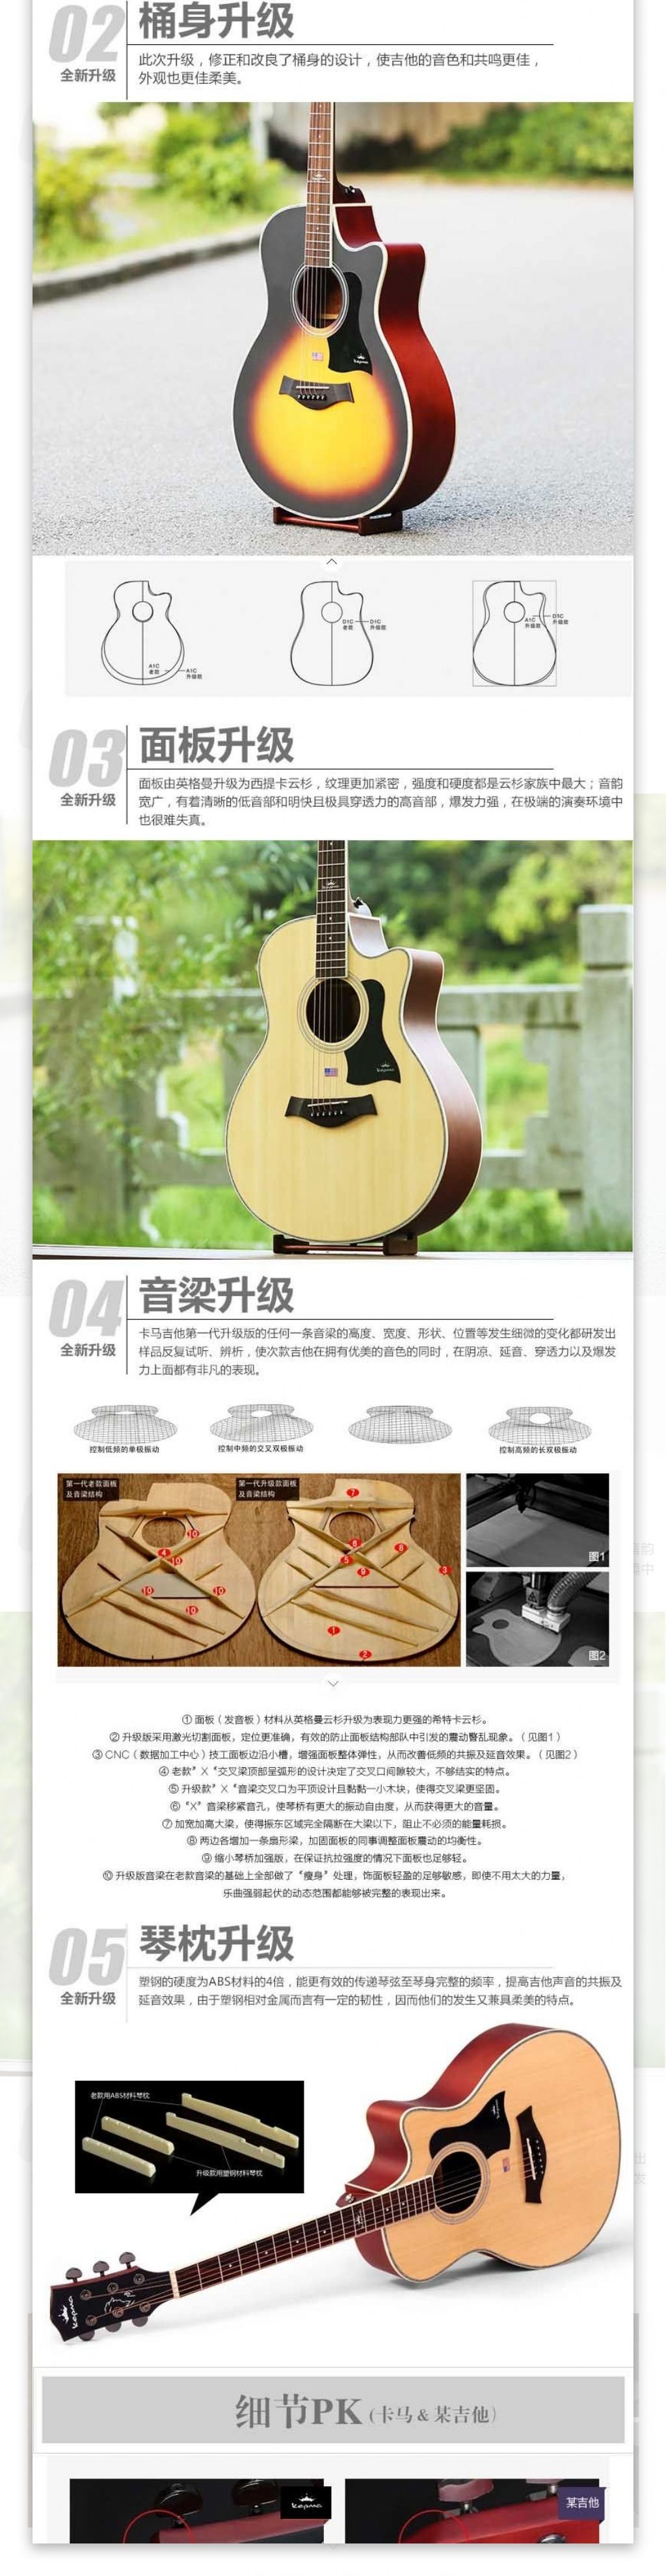 淘宝吉他乐器详情页描述模板乐器